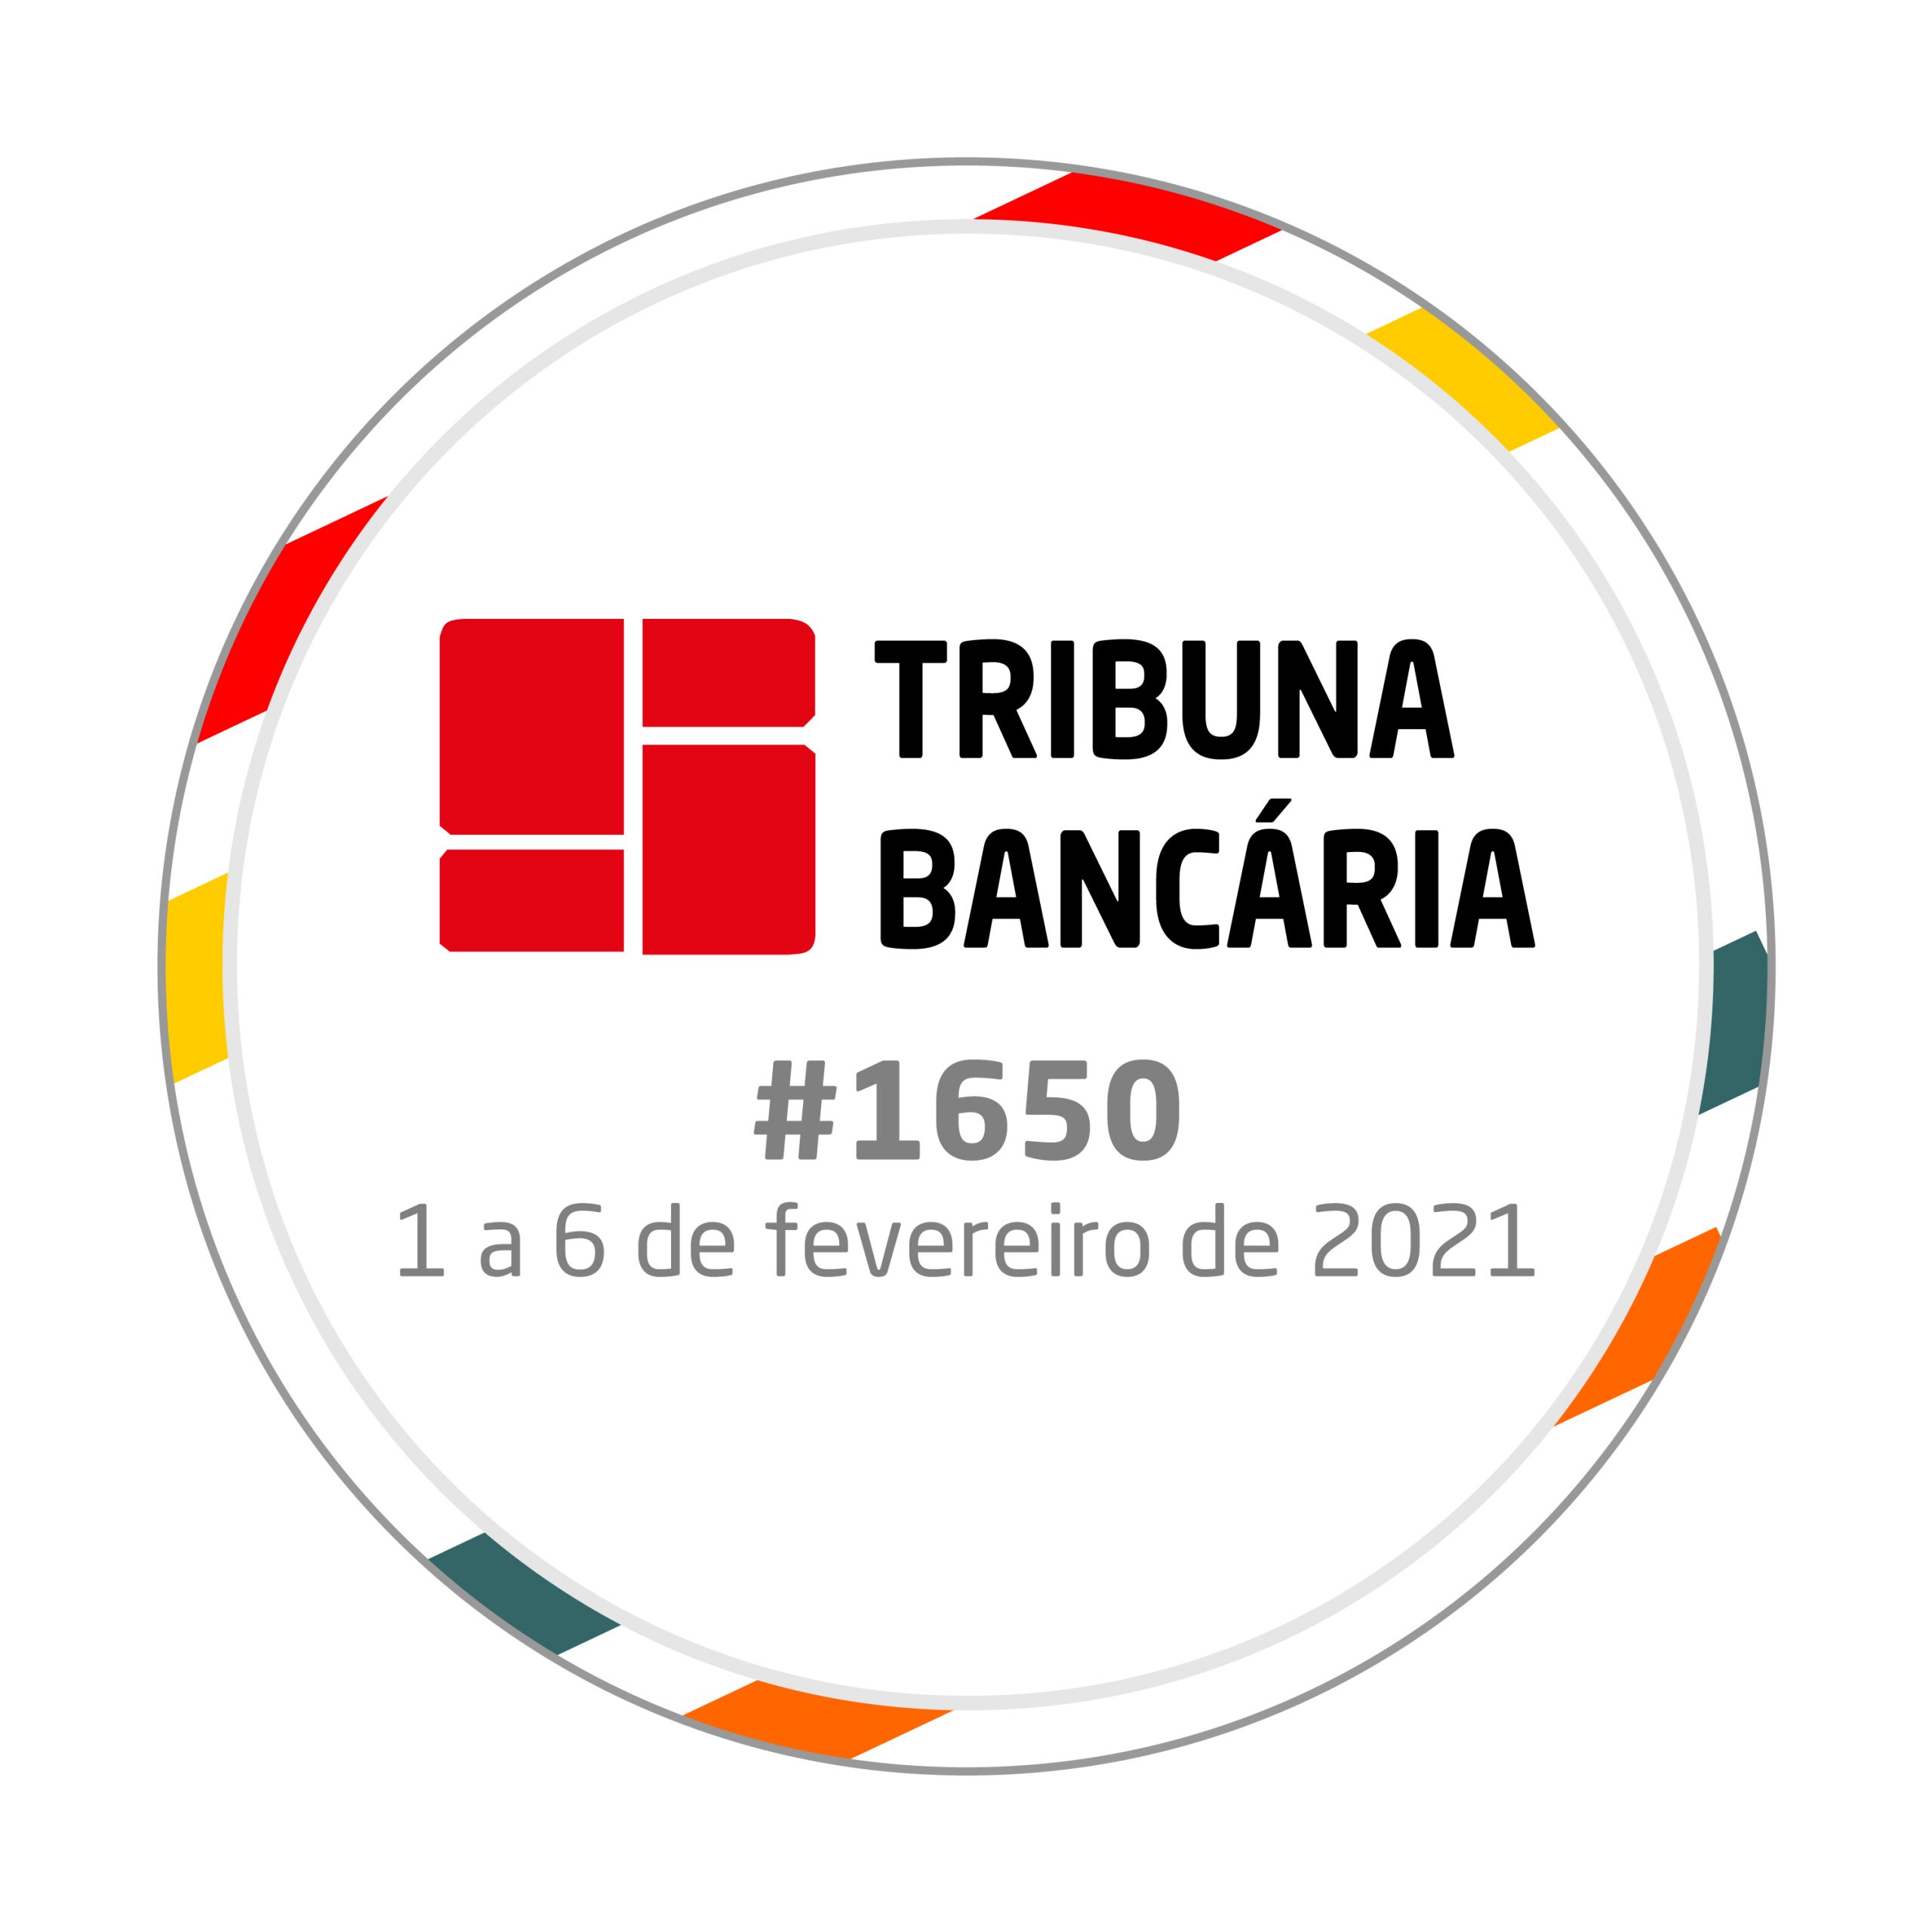 Tribuna Bancária 1650 | 1 a 6 de fevereiro de 2021